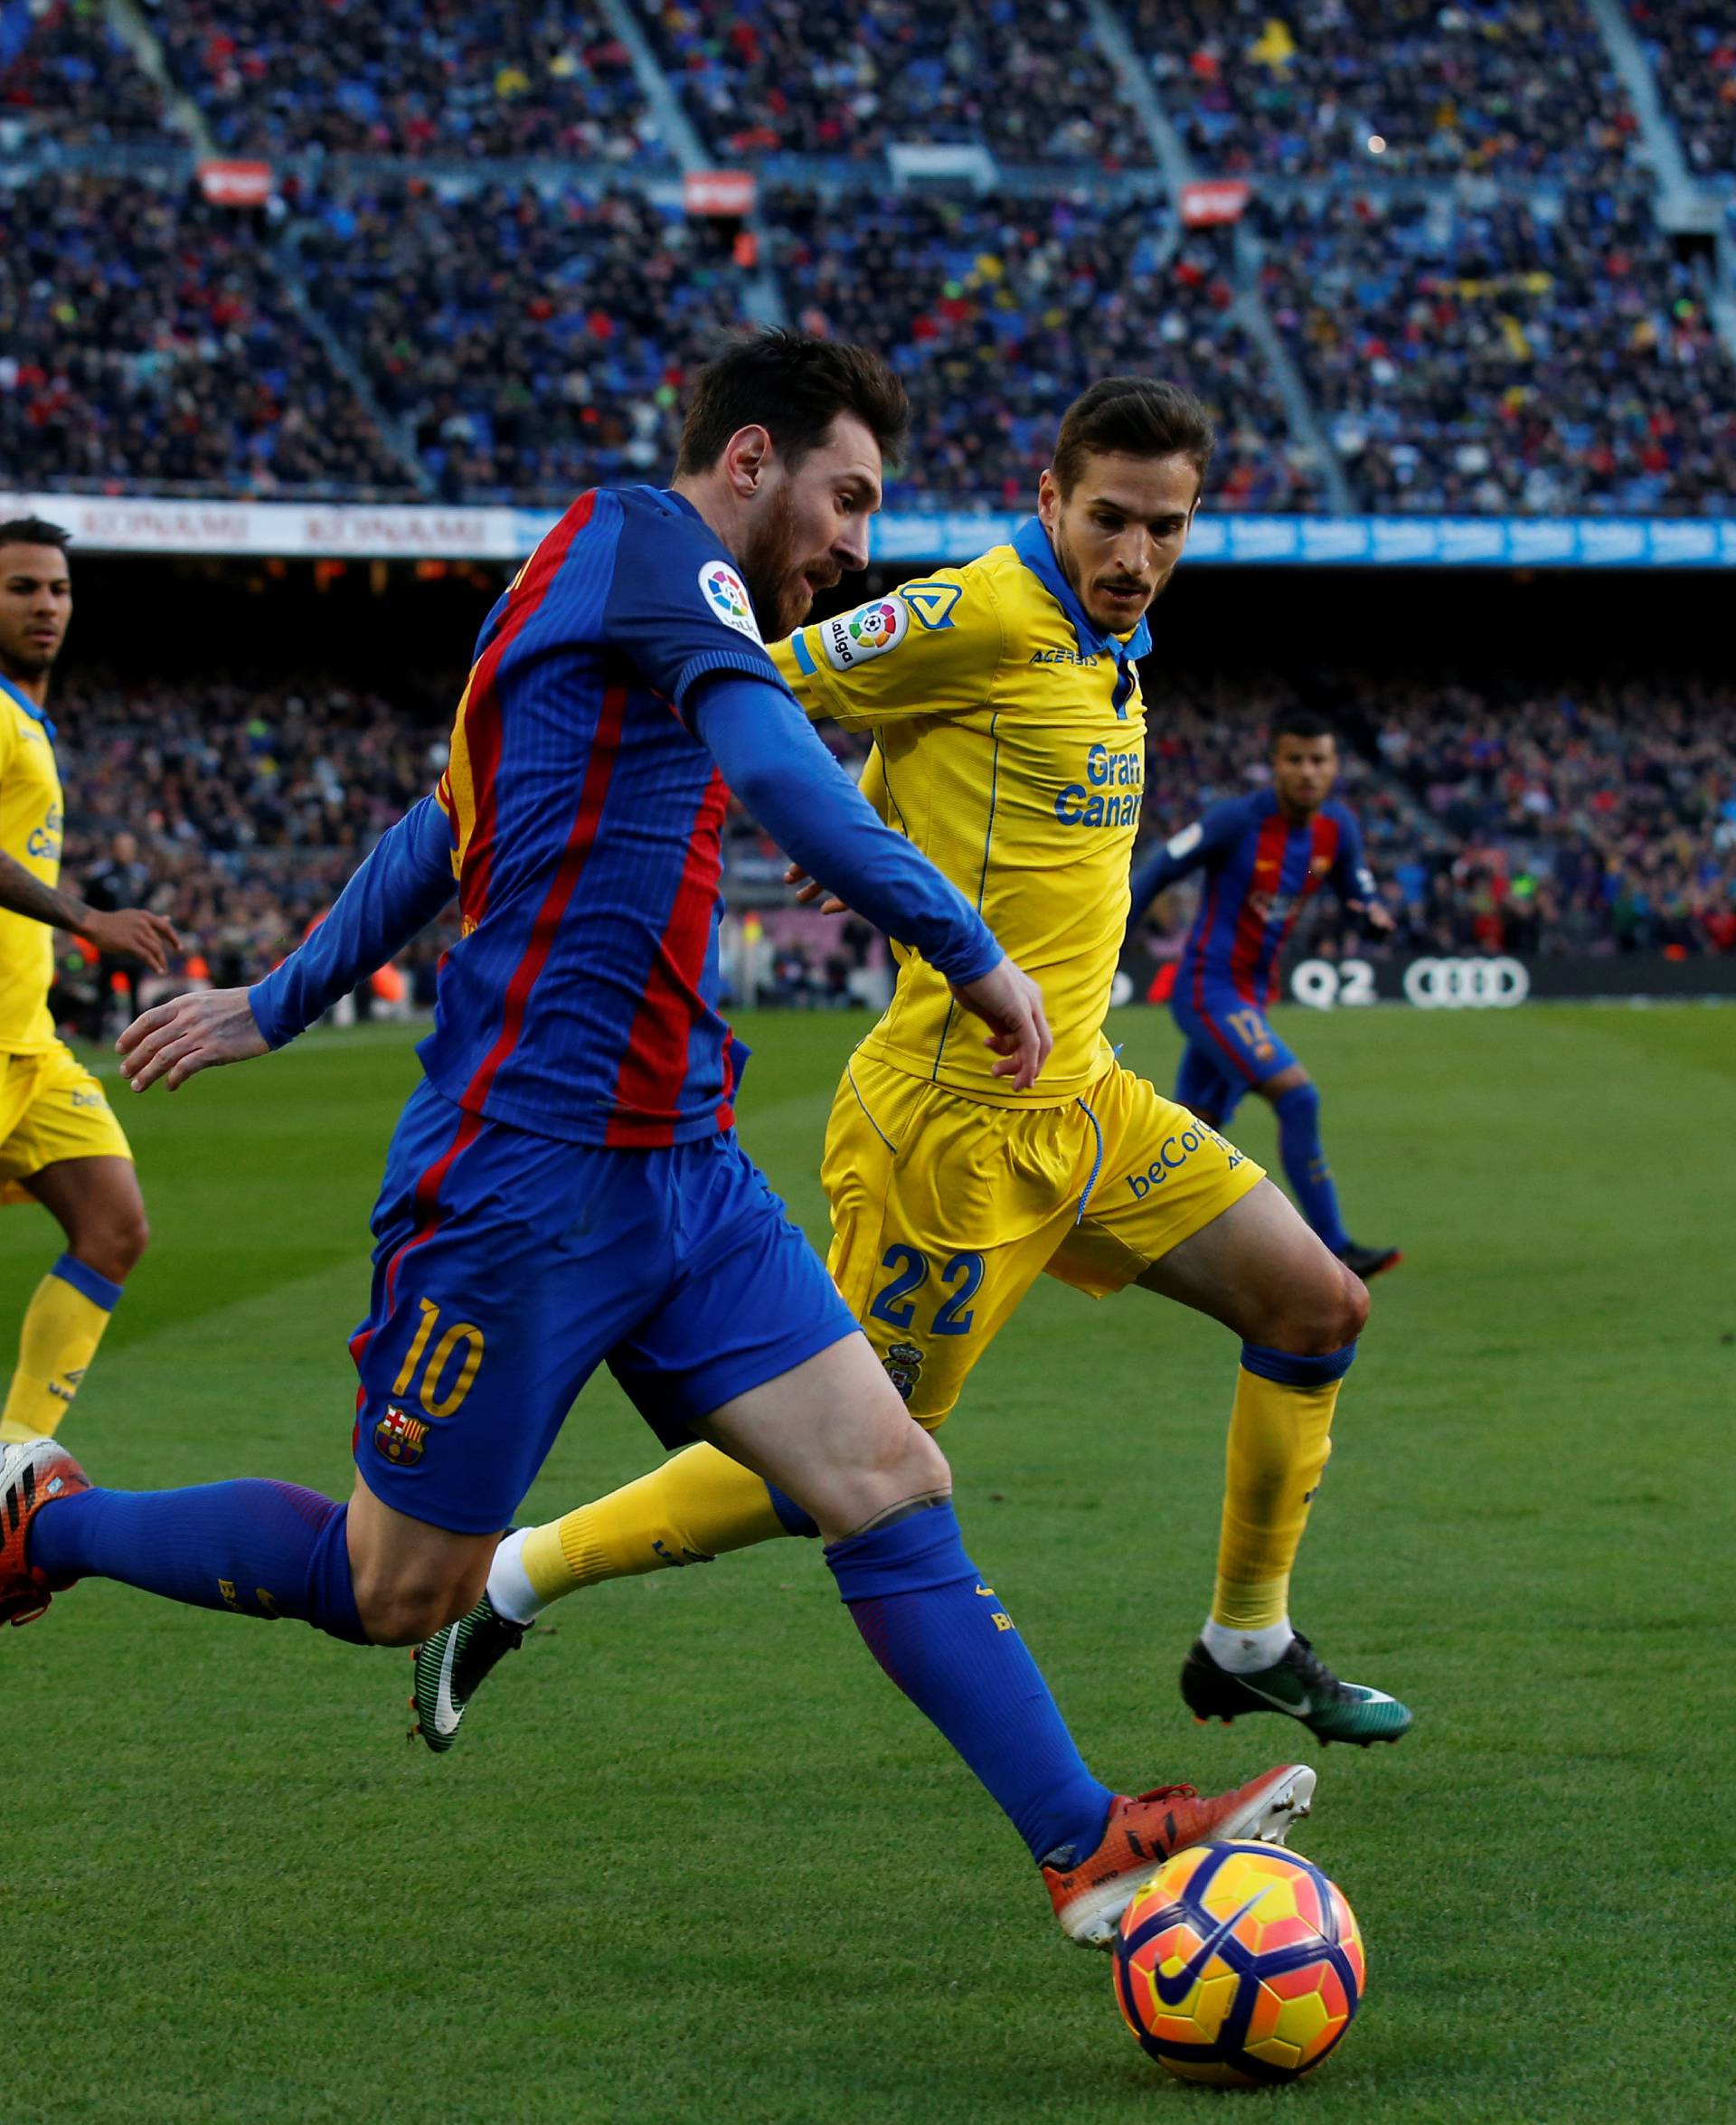 Football Soccer - Barcelona v Las Palmas - Spanish La Liga Santander - Camp Nou stadium